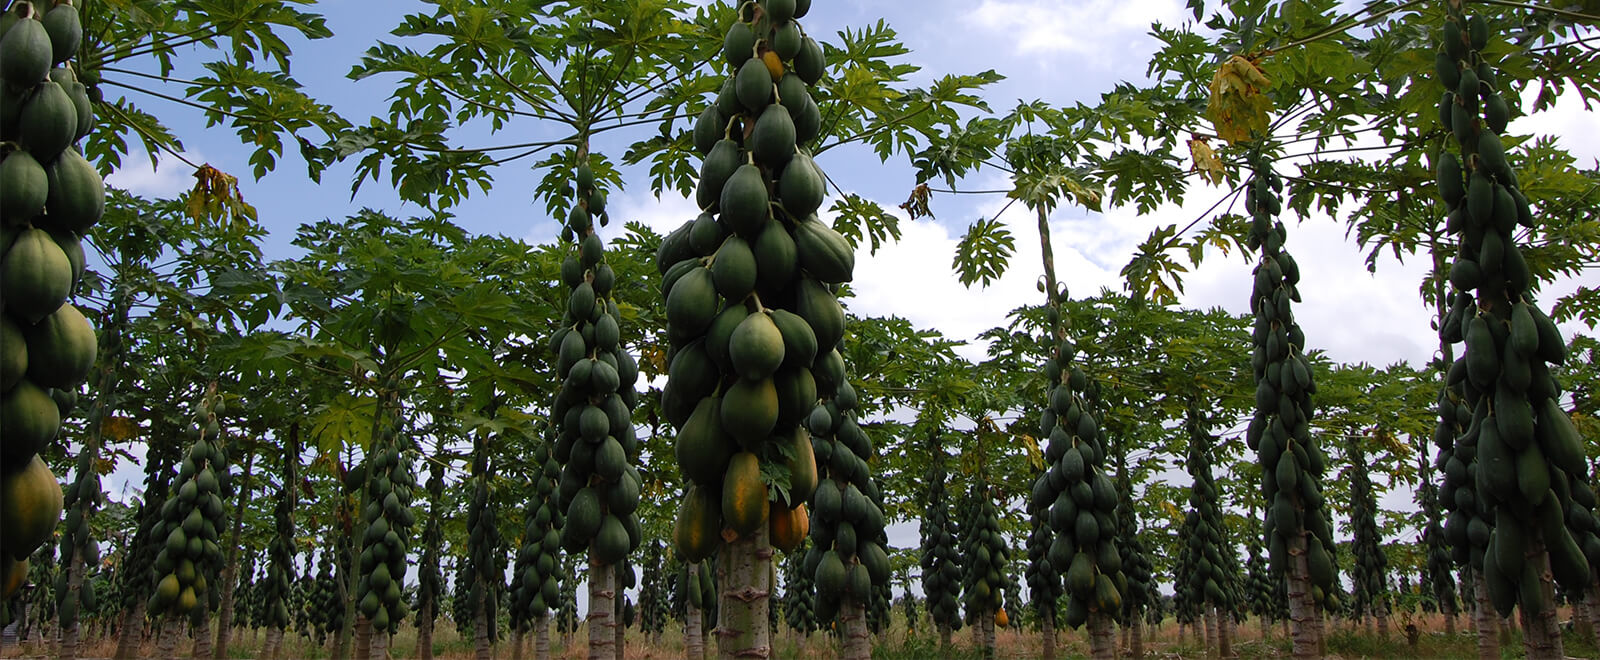 Papaya plantation, trees full fruits ready for harvest